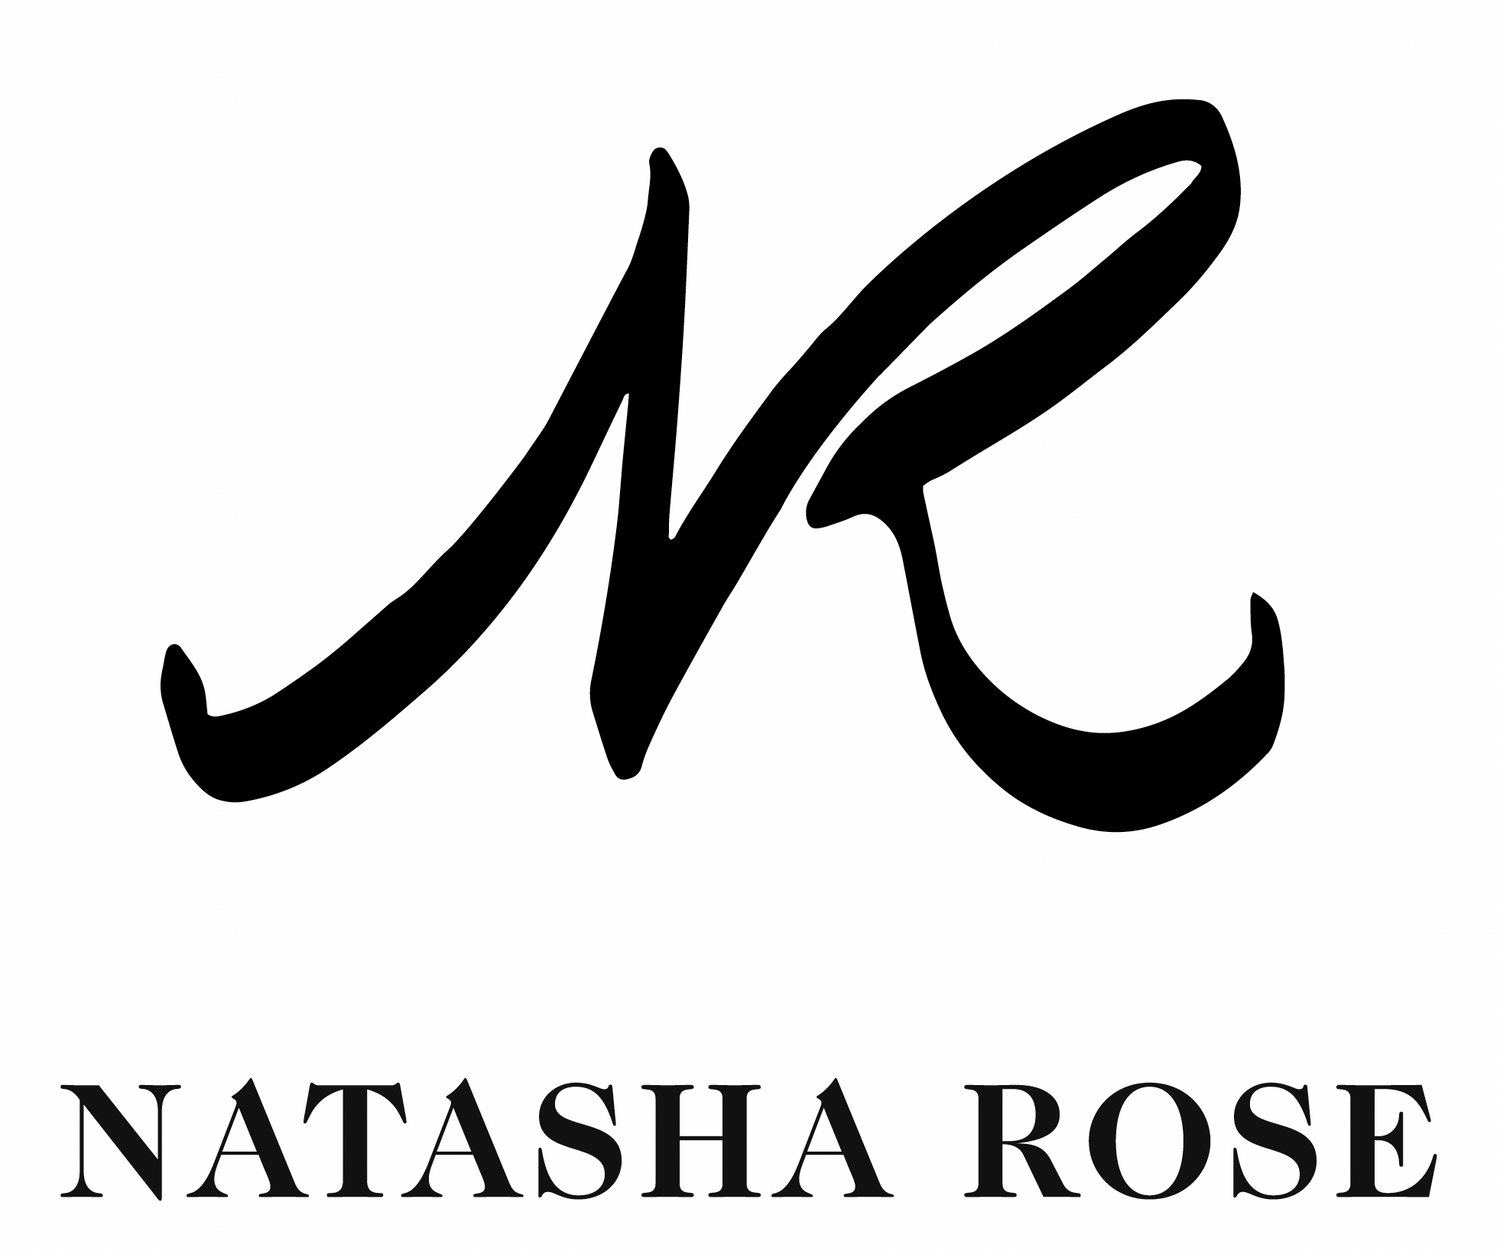 NATASHA ROSE ART